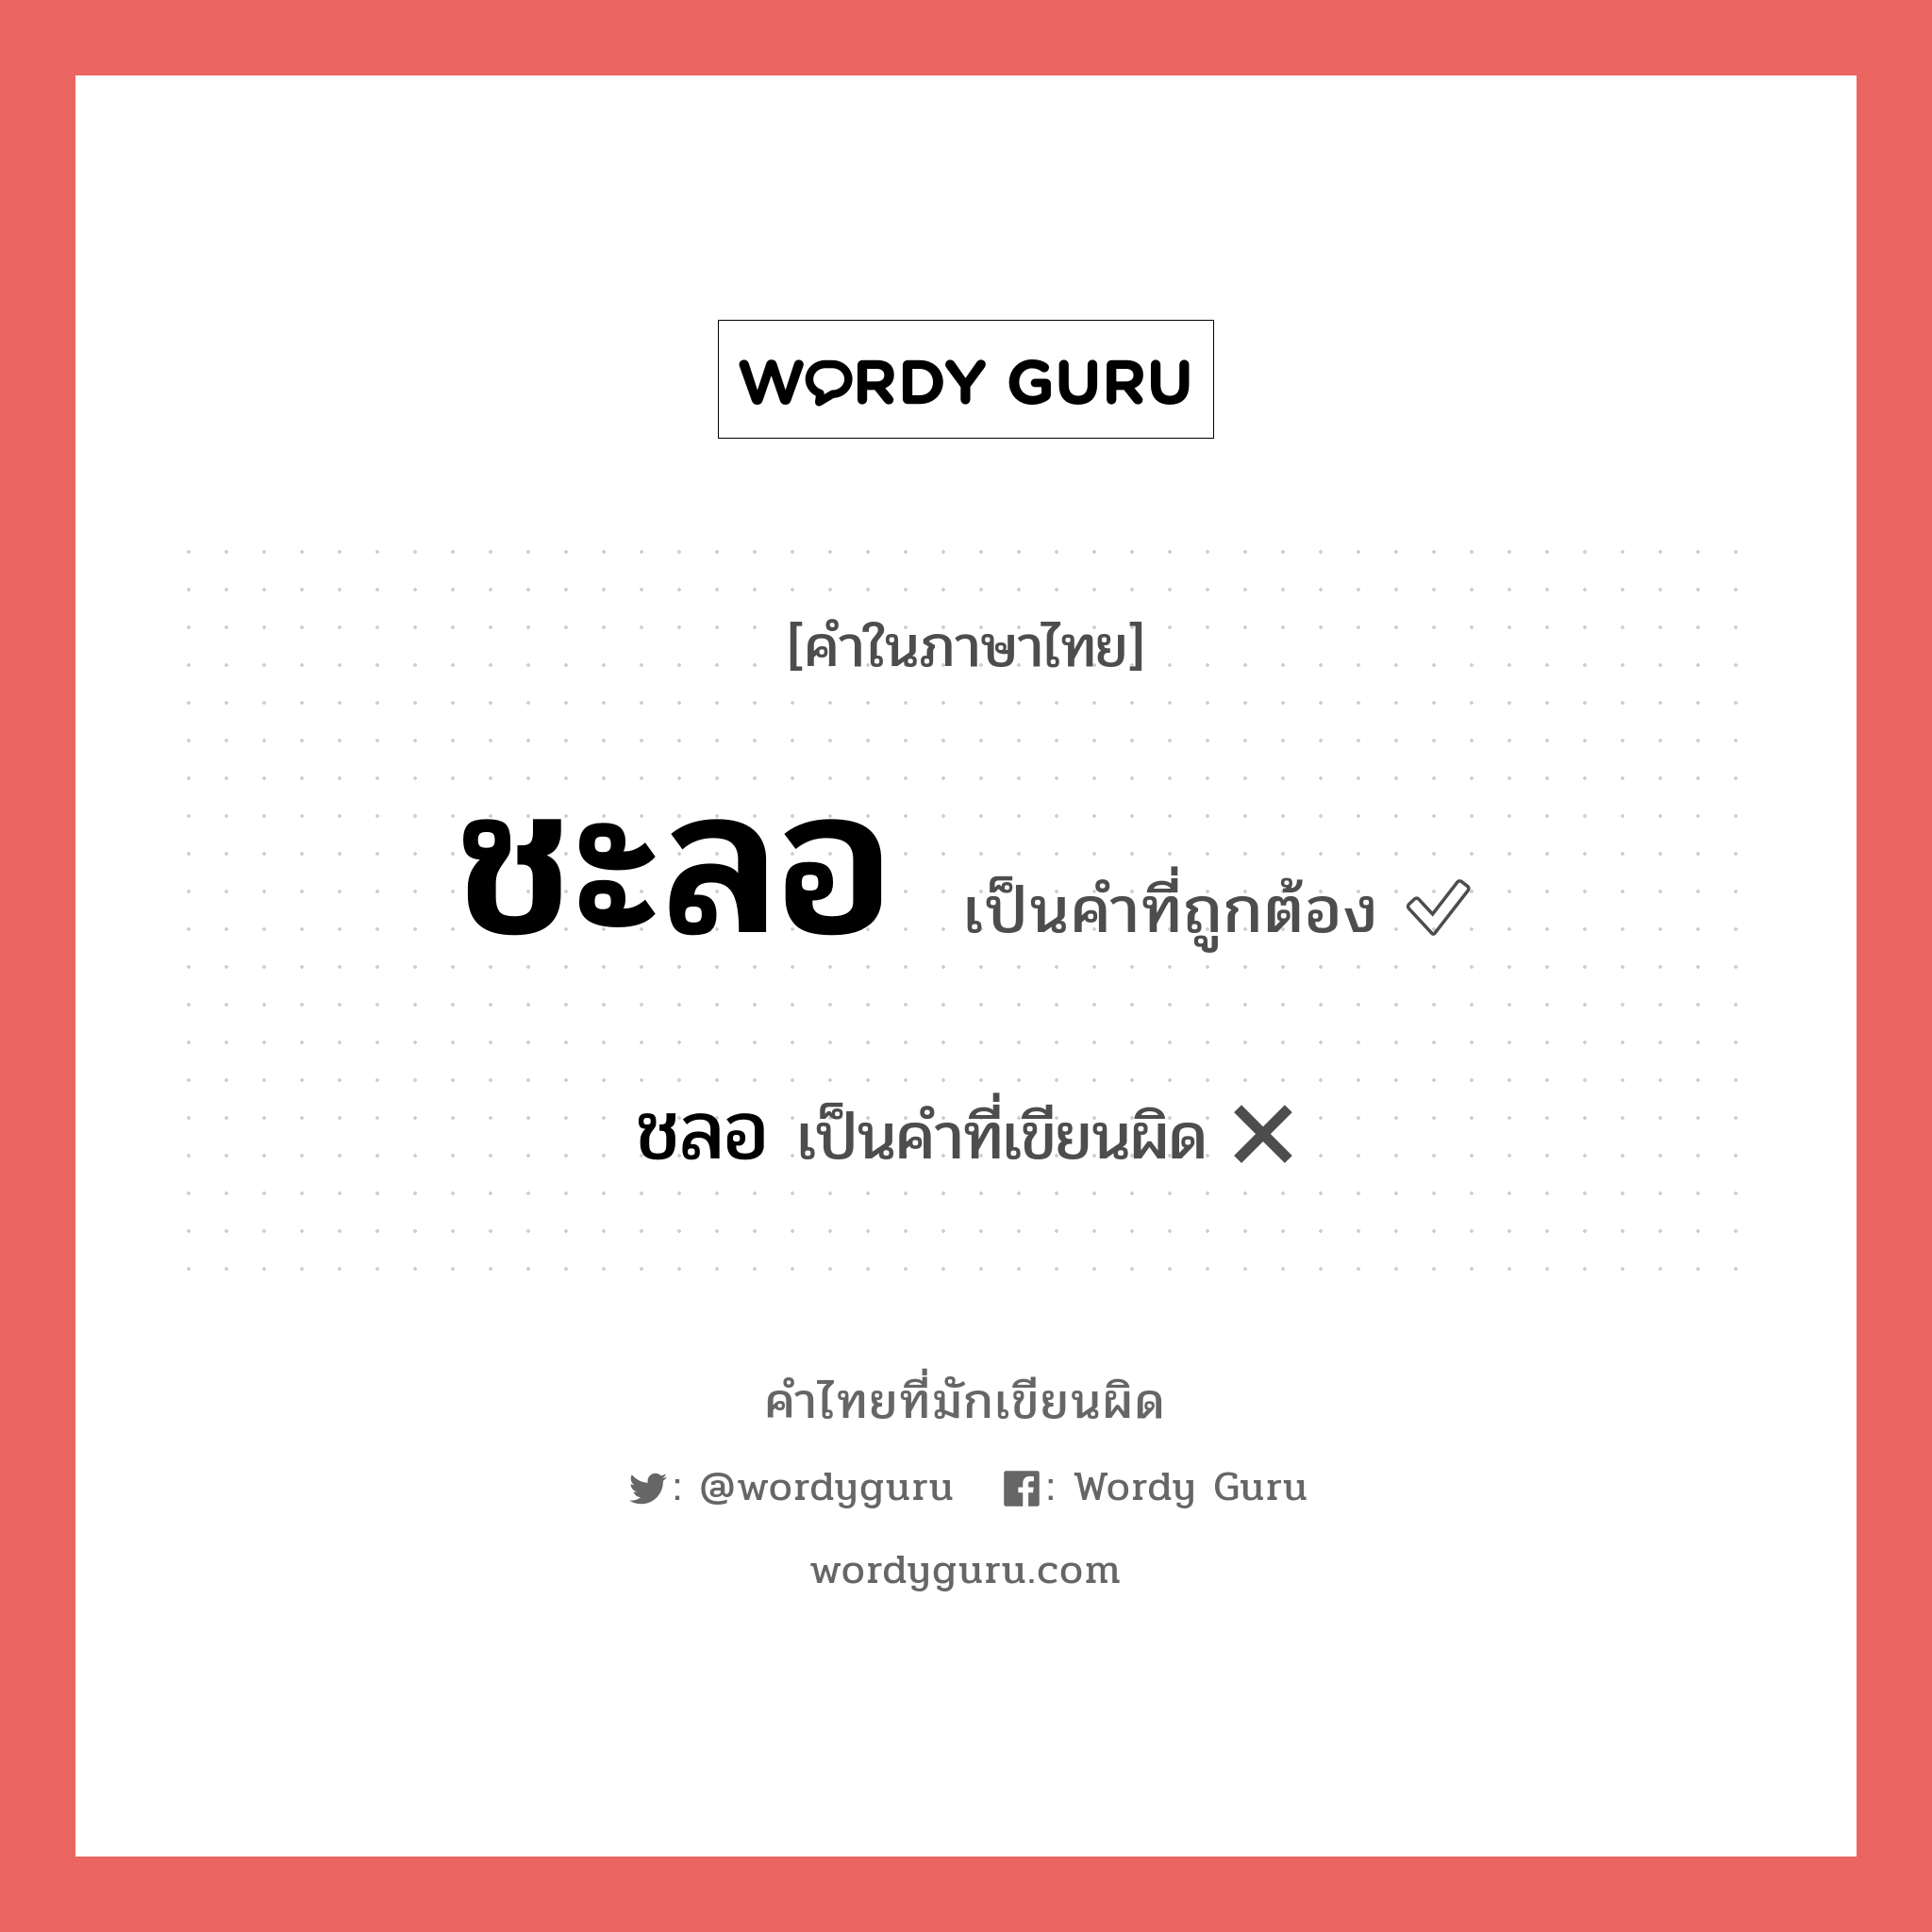 ชะลอ หรือ ชลอ คำไหนเขียนถูก?, คำในภาษาไทยที่มักเขียนผิด ชะลอ คำที่ผิด ❌ ชลอ